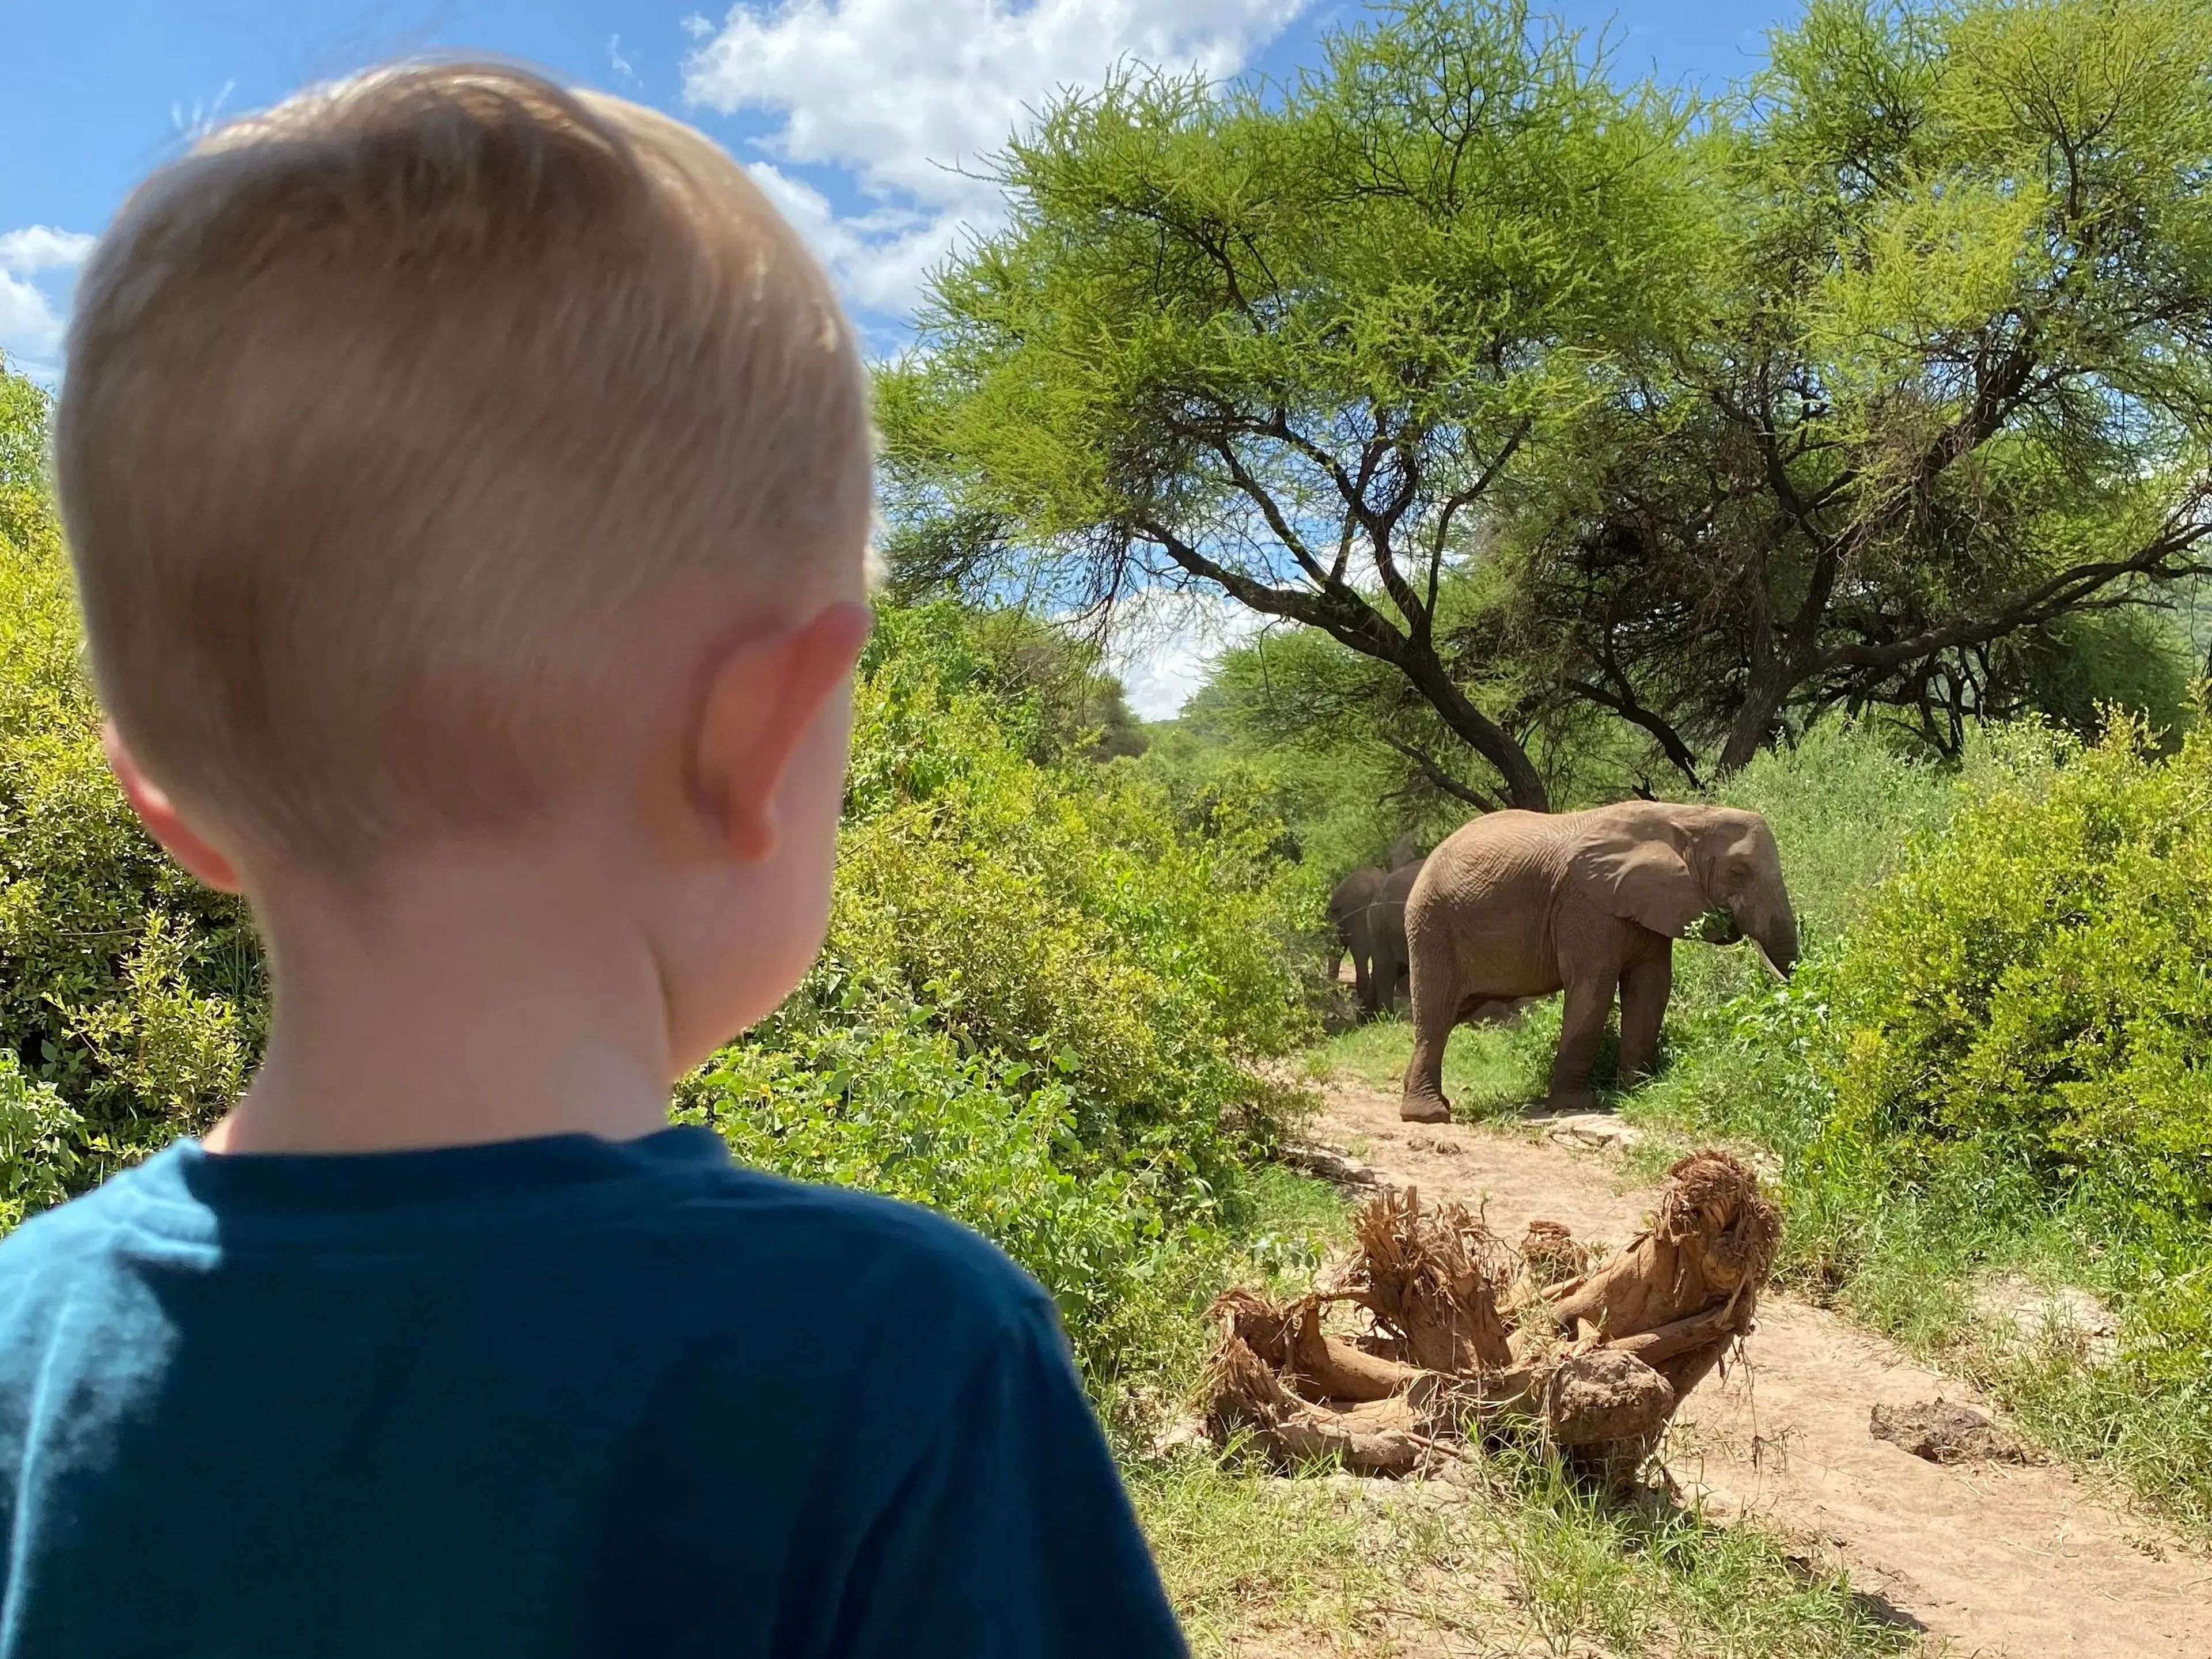 El hijo de Edwards observando un elefante en el safari.